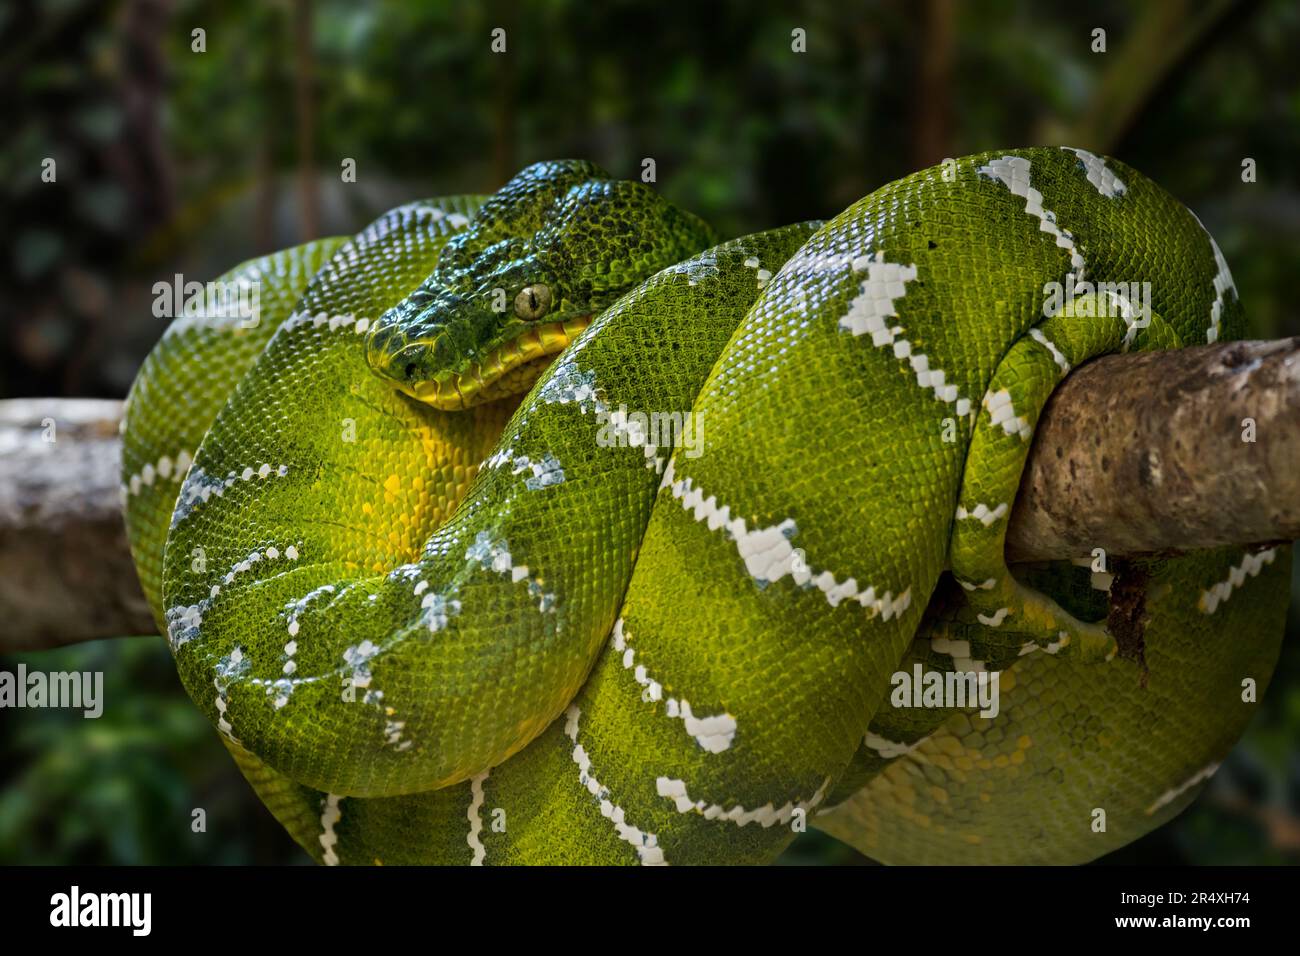 Smaragdboa (Corallus caninus), in Bäumen zusammengerollt, nicht giftige tropische Schlangenarten, die in den Regenwäldern Südamerikas heimisch sind Stockfoto